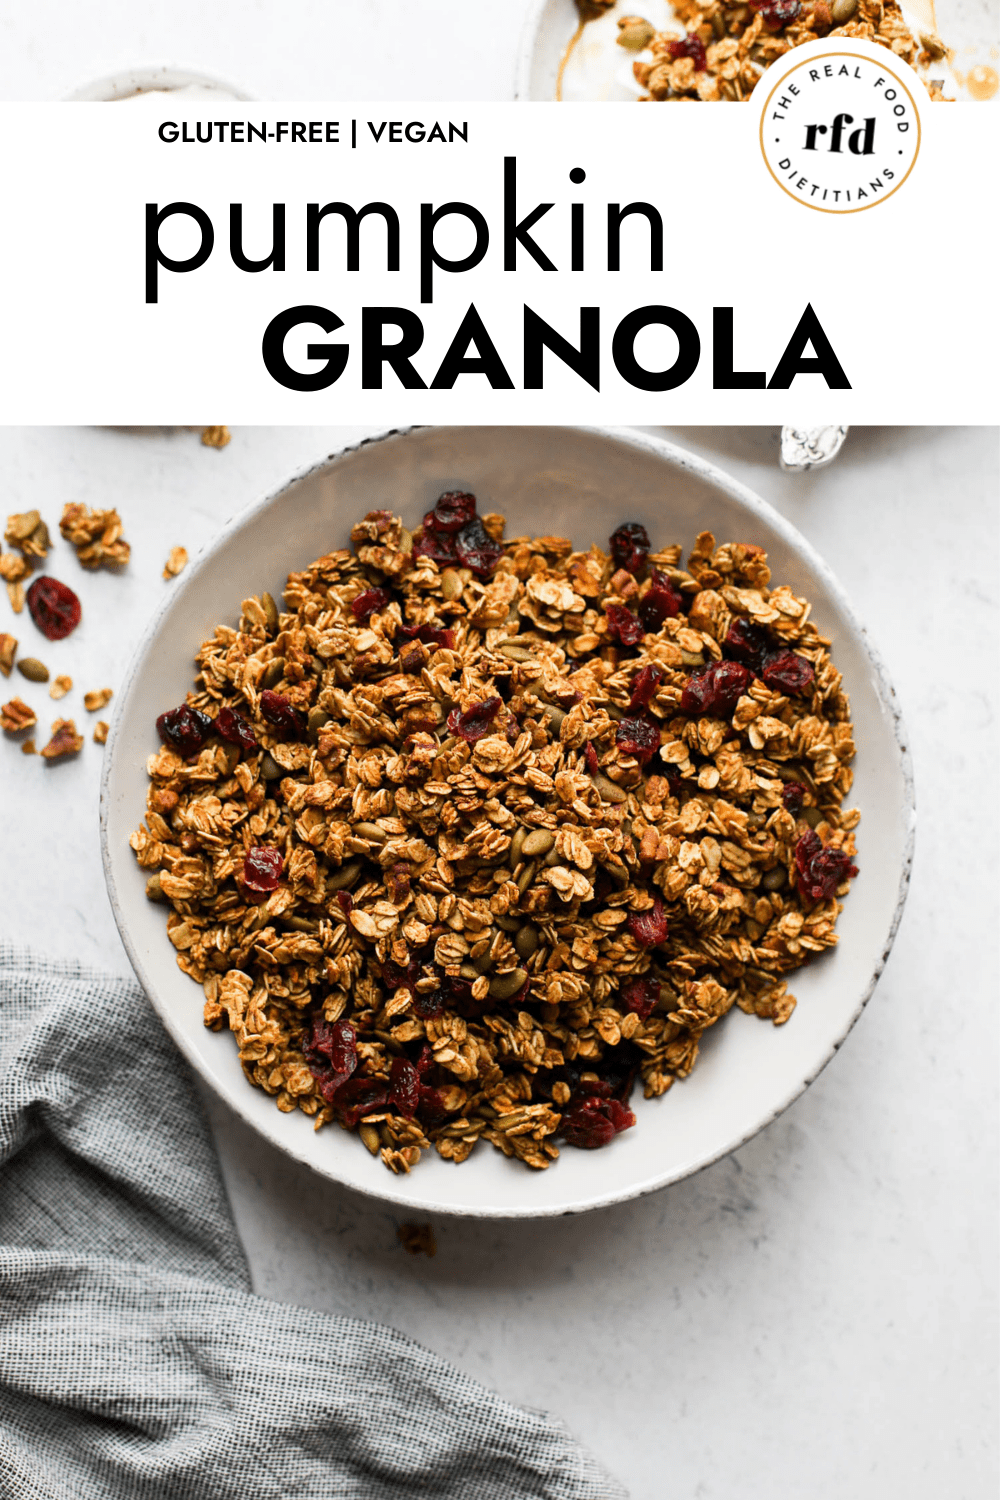 Granola con yogur Realfooding - Receta EASY FRY & GRILL 2 in 1